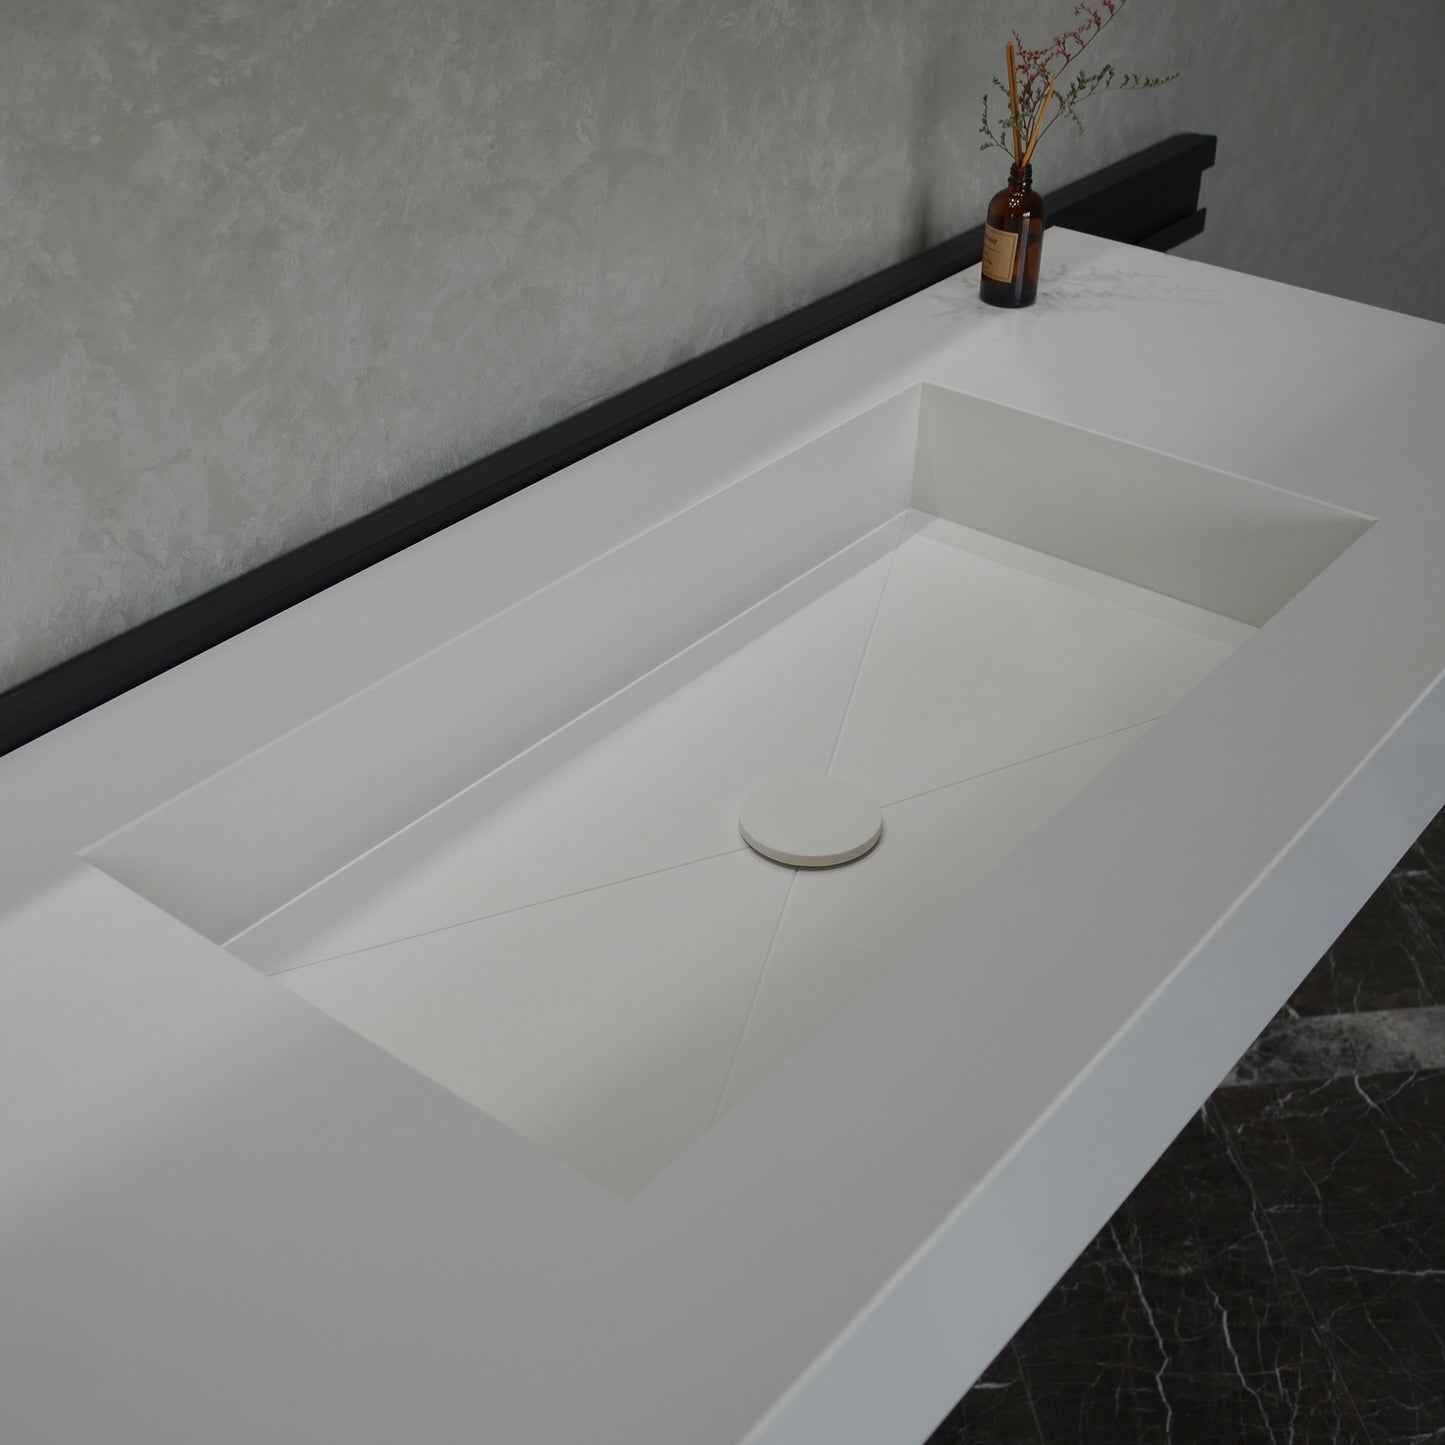 Quartz Bathroom Vanity With Single Sink